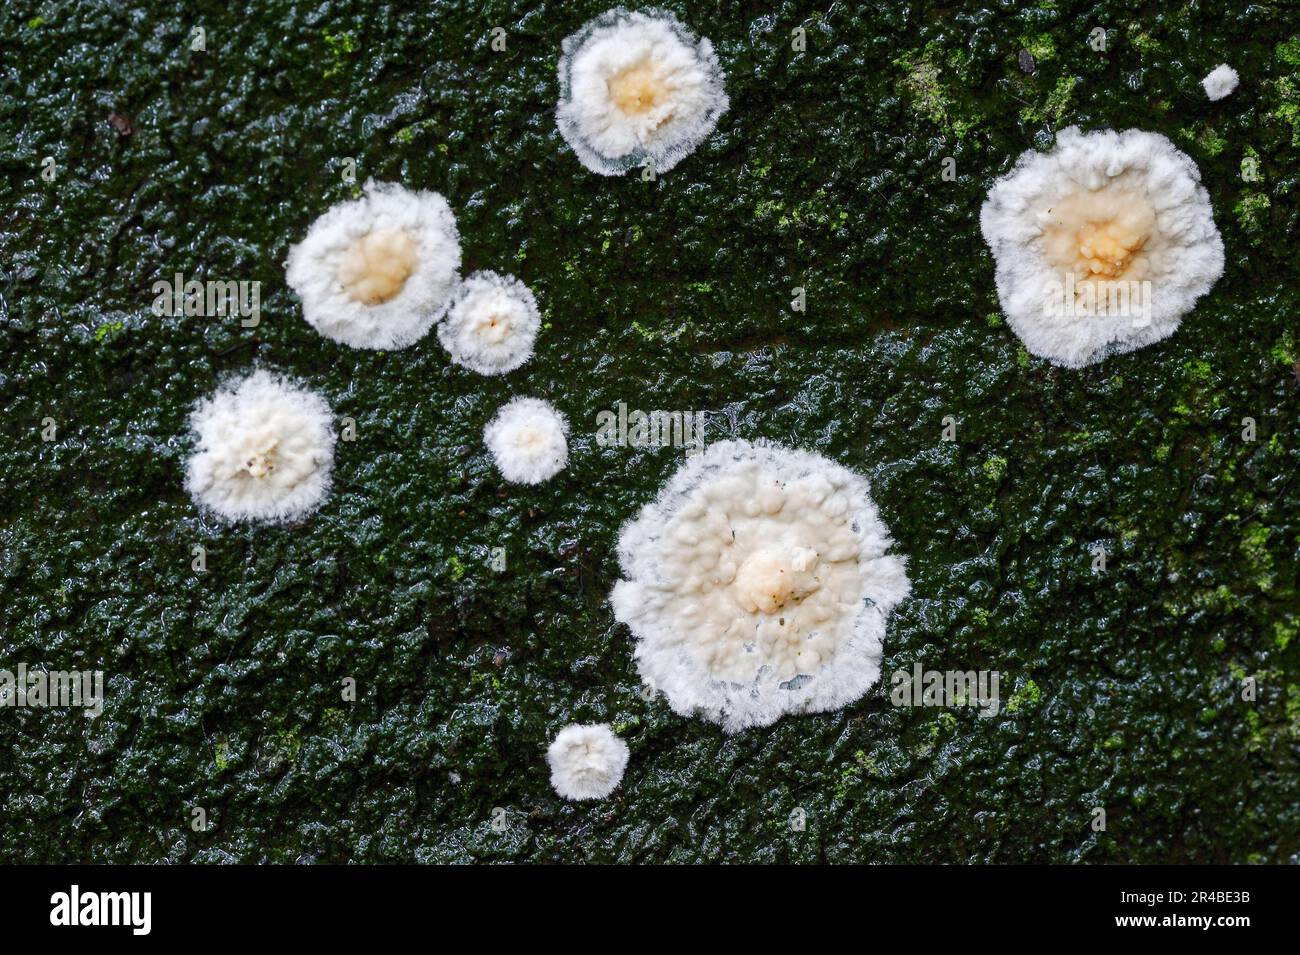 Detaching bark fungus, North Rhine-Westphalia (Cylindrobasidium laeve) (Cylindrobasidium evolvens), Germany Stock Photo